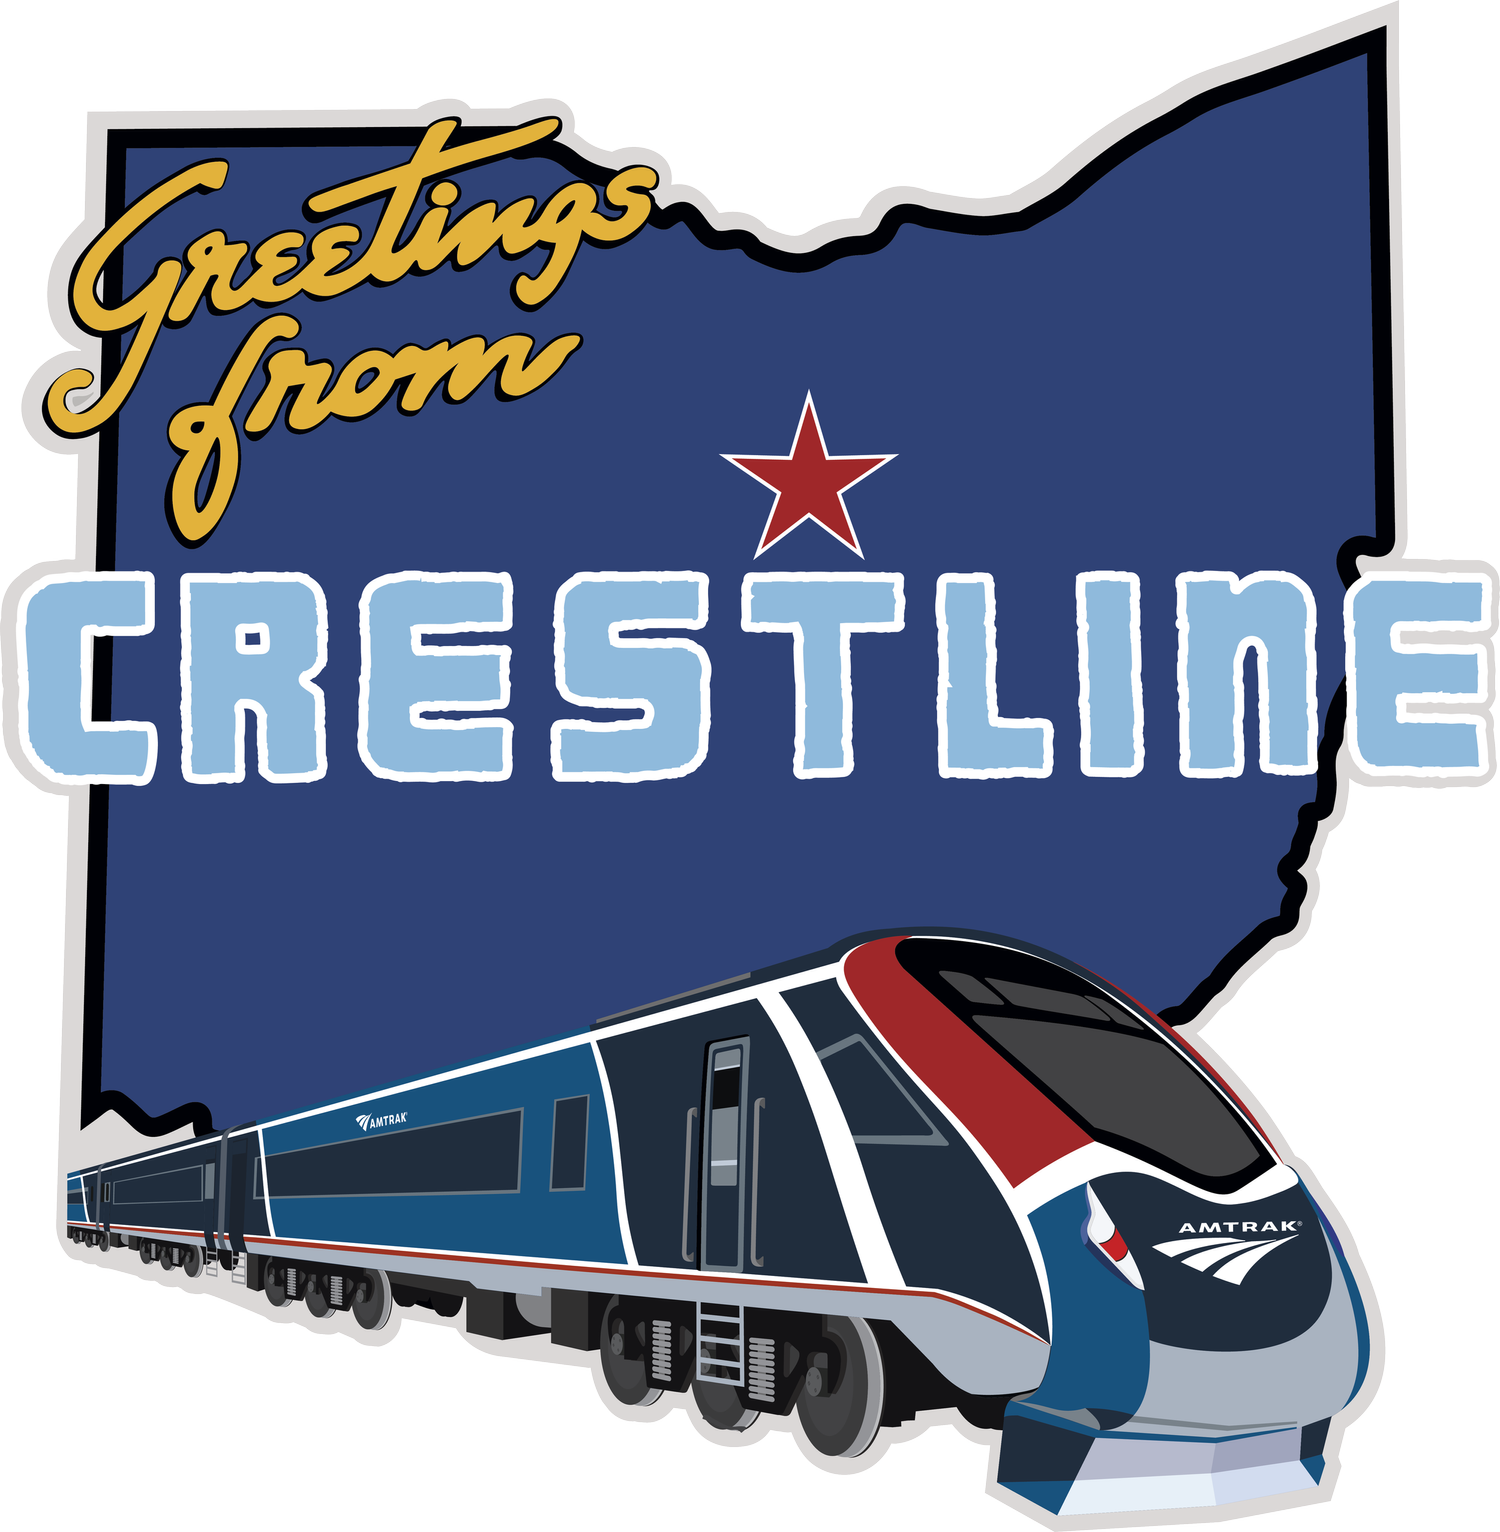 Crestline Amtrak